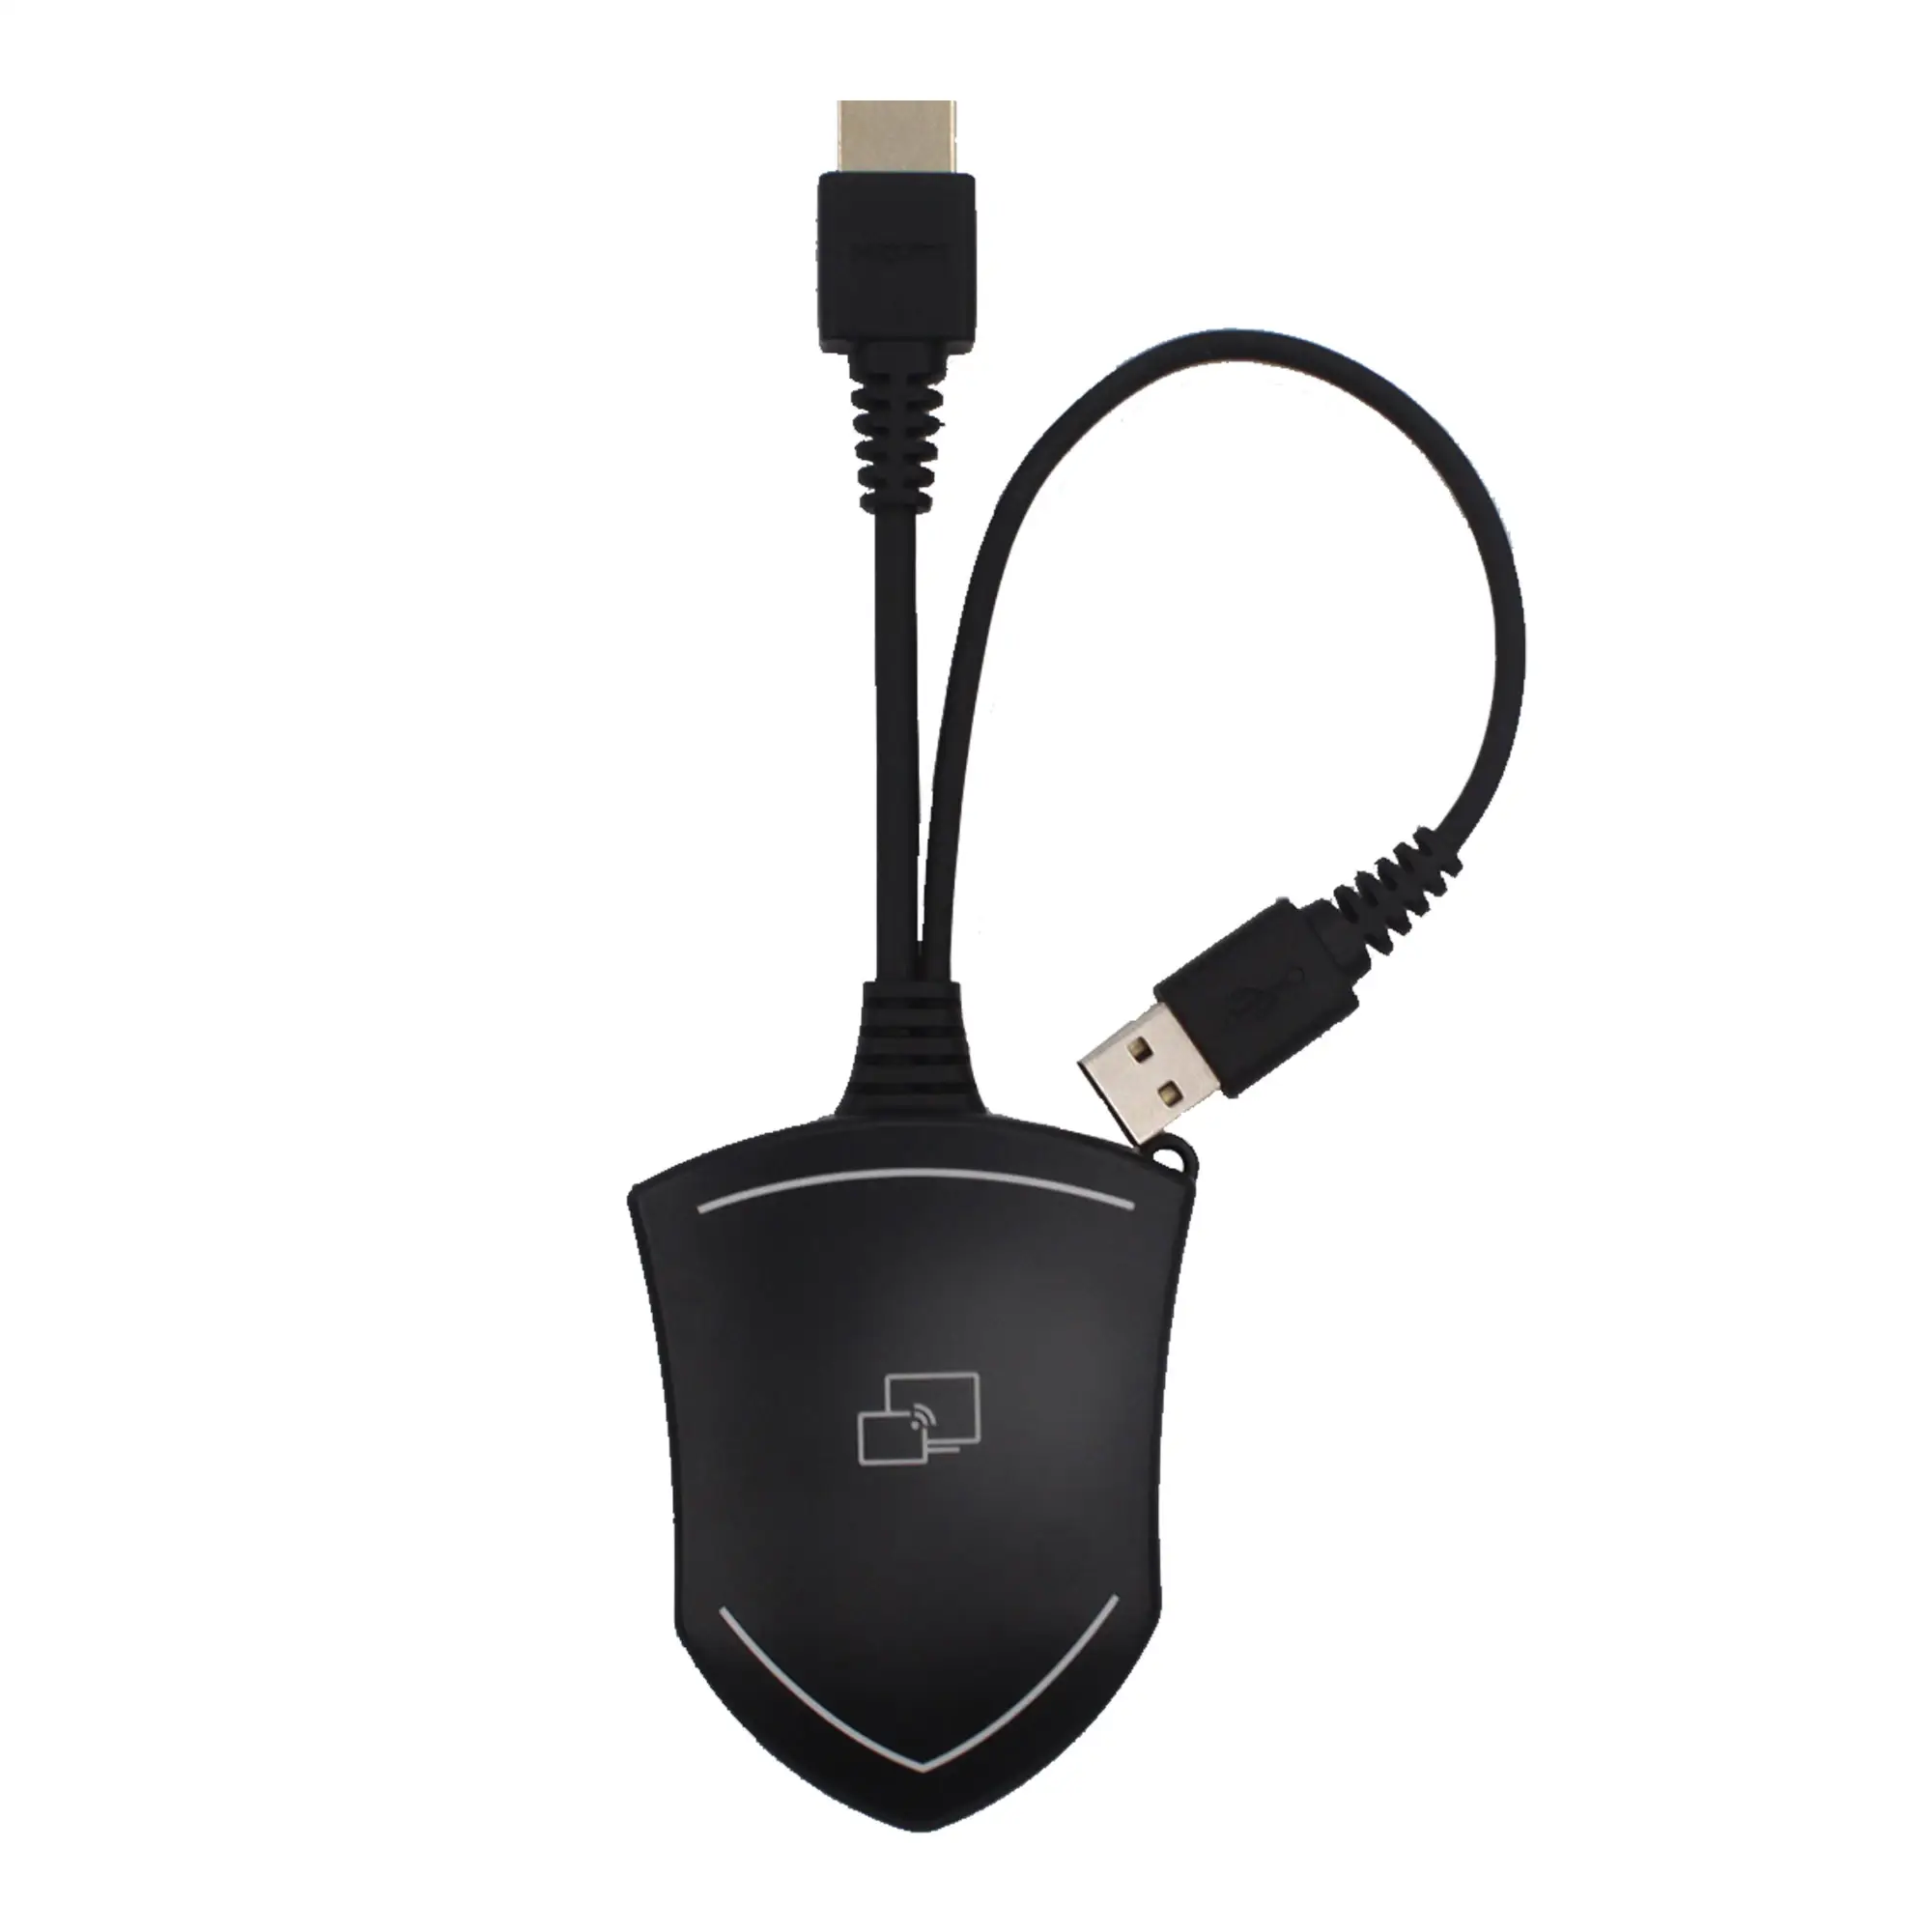 Sistema de presentación inalámbrico de audio y video profesional USB Touch back dongle Windows PC Mac OS Airplay Miracast transmisor HDMI